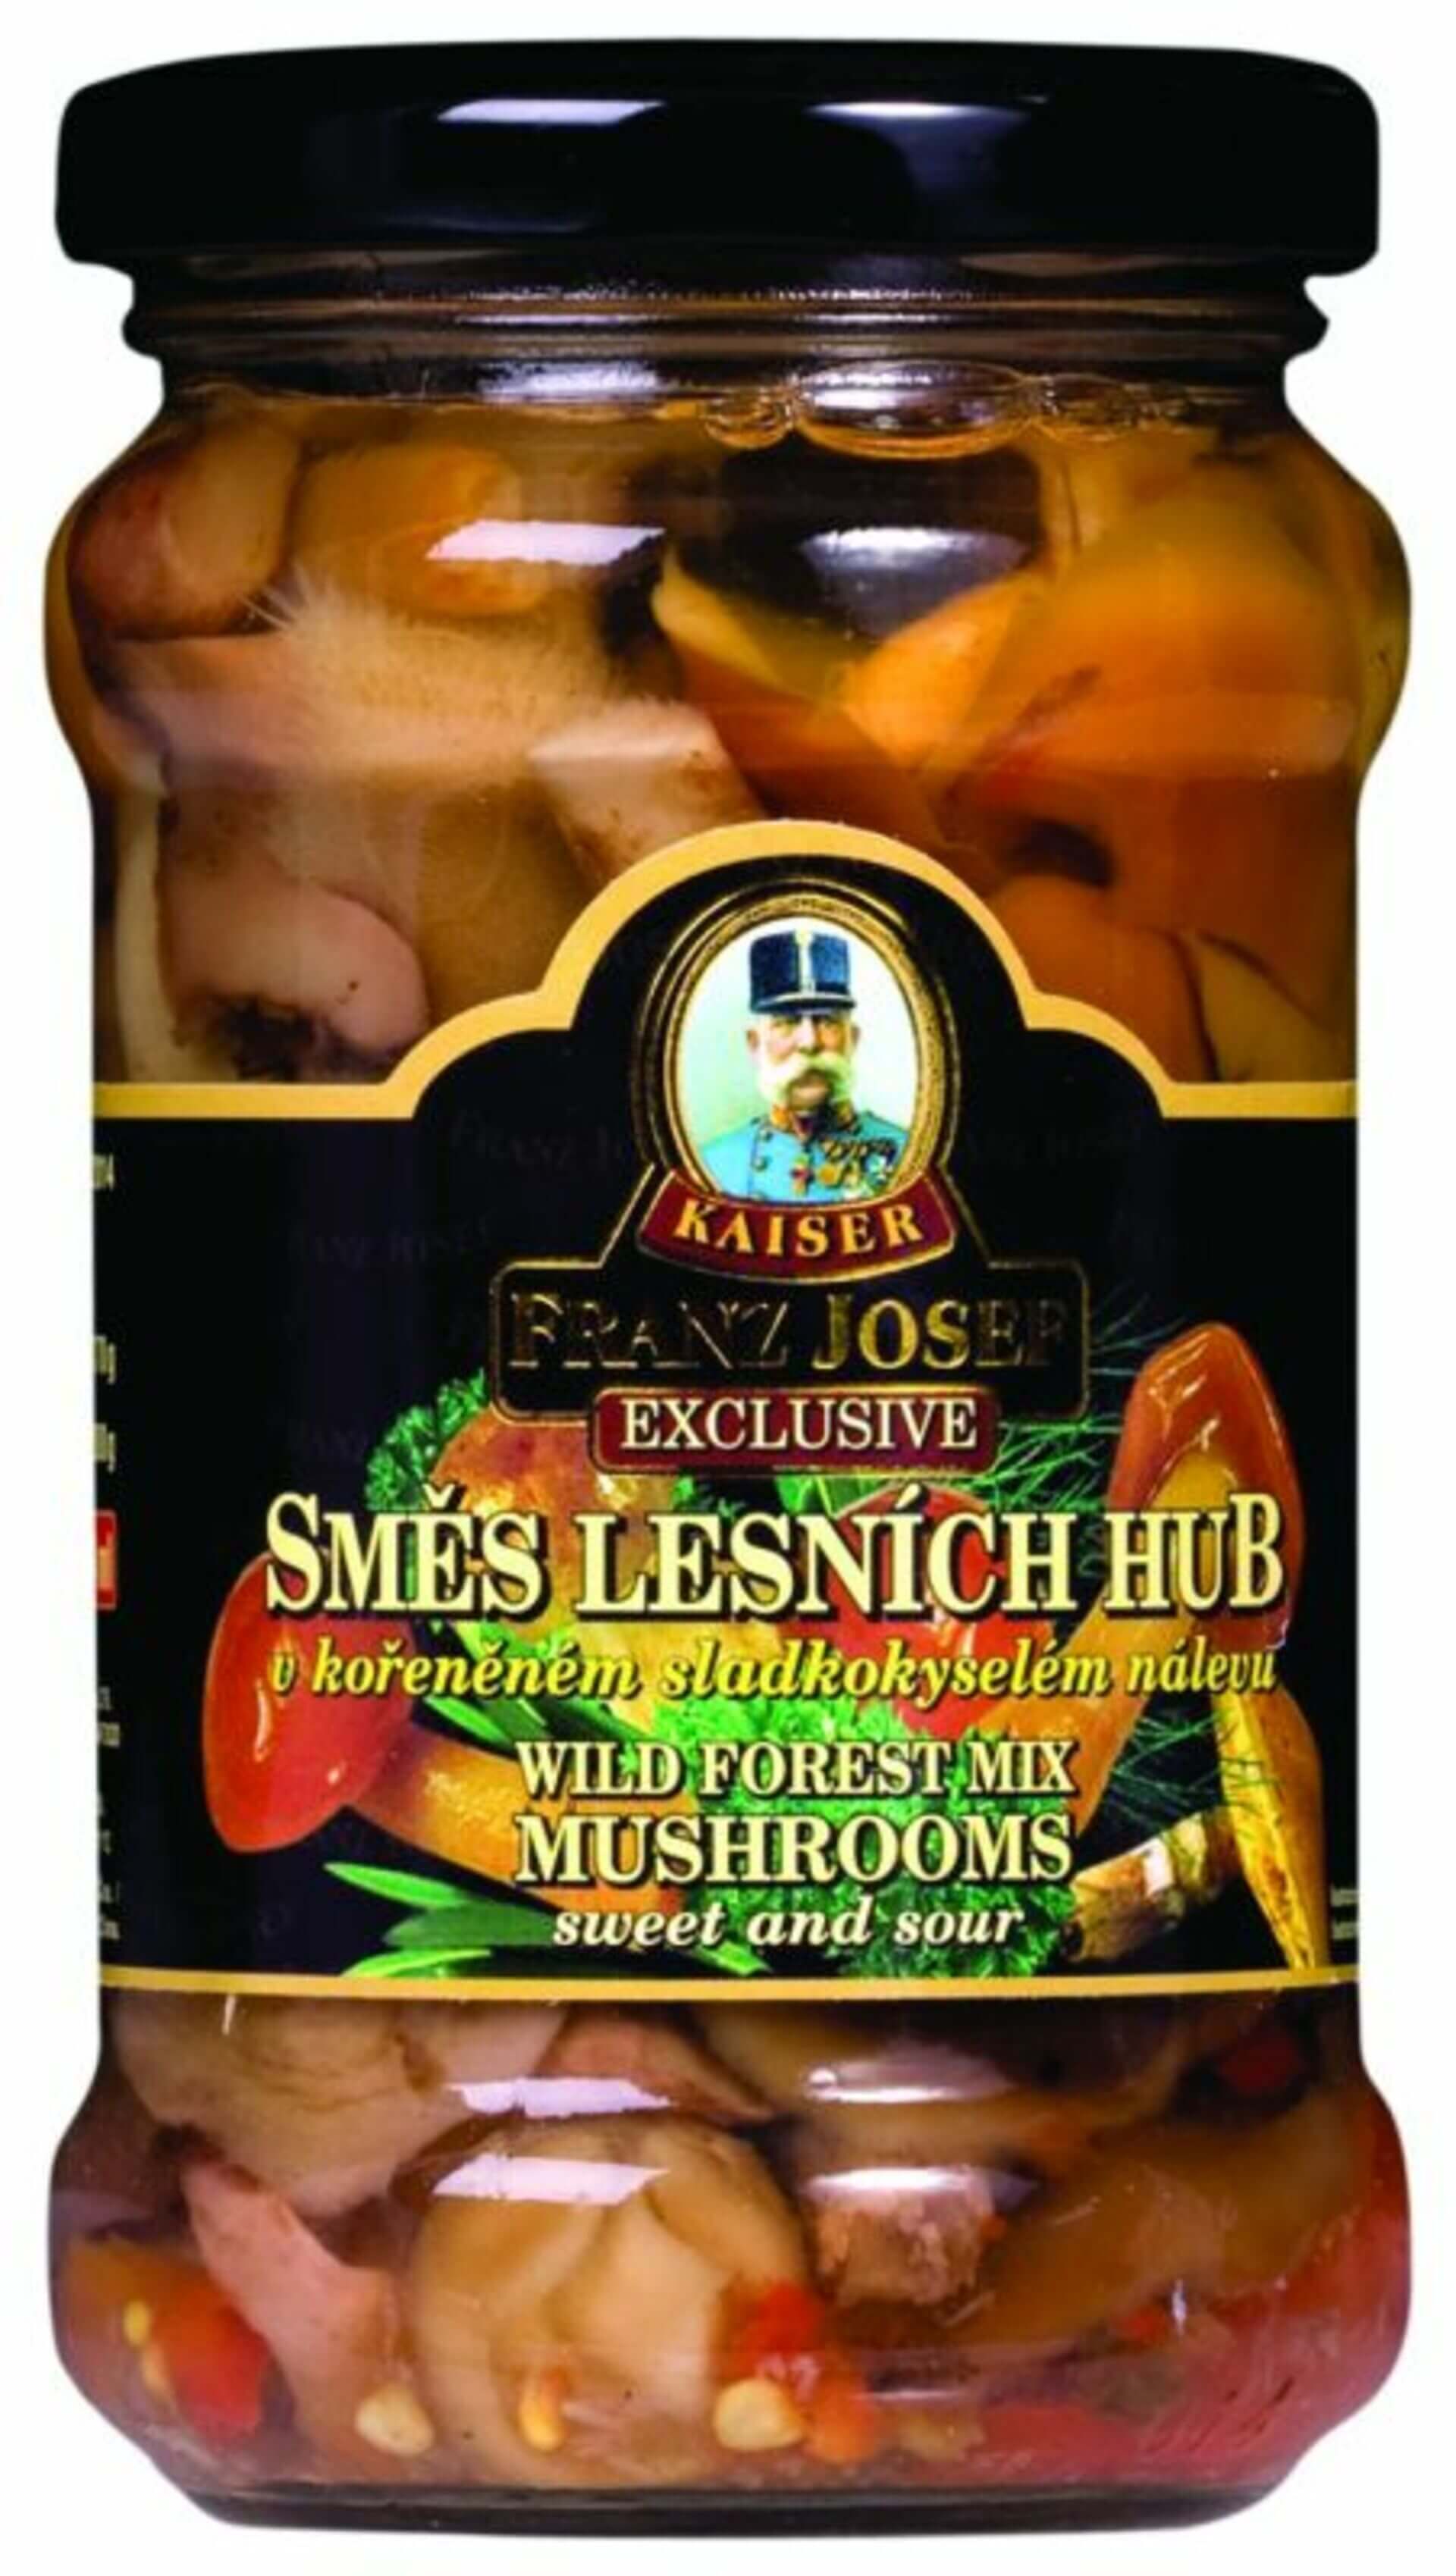 Franz Josef Kaiser Zmes lesných húb v sladkokyslom náleve 314 ml (280 g)